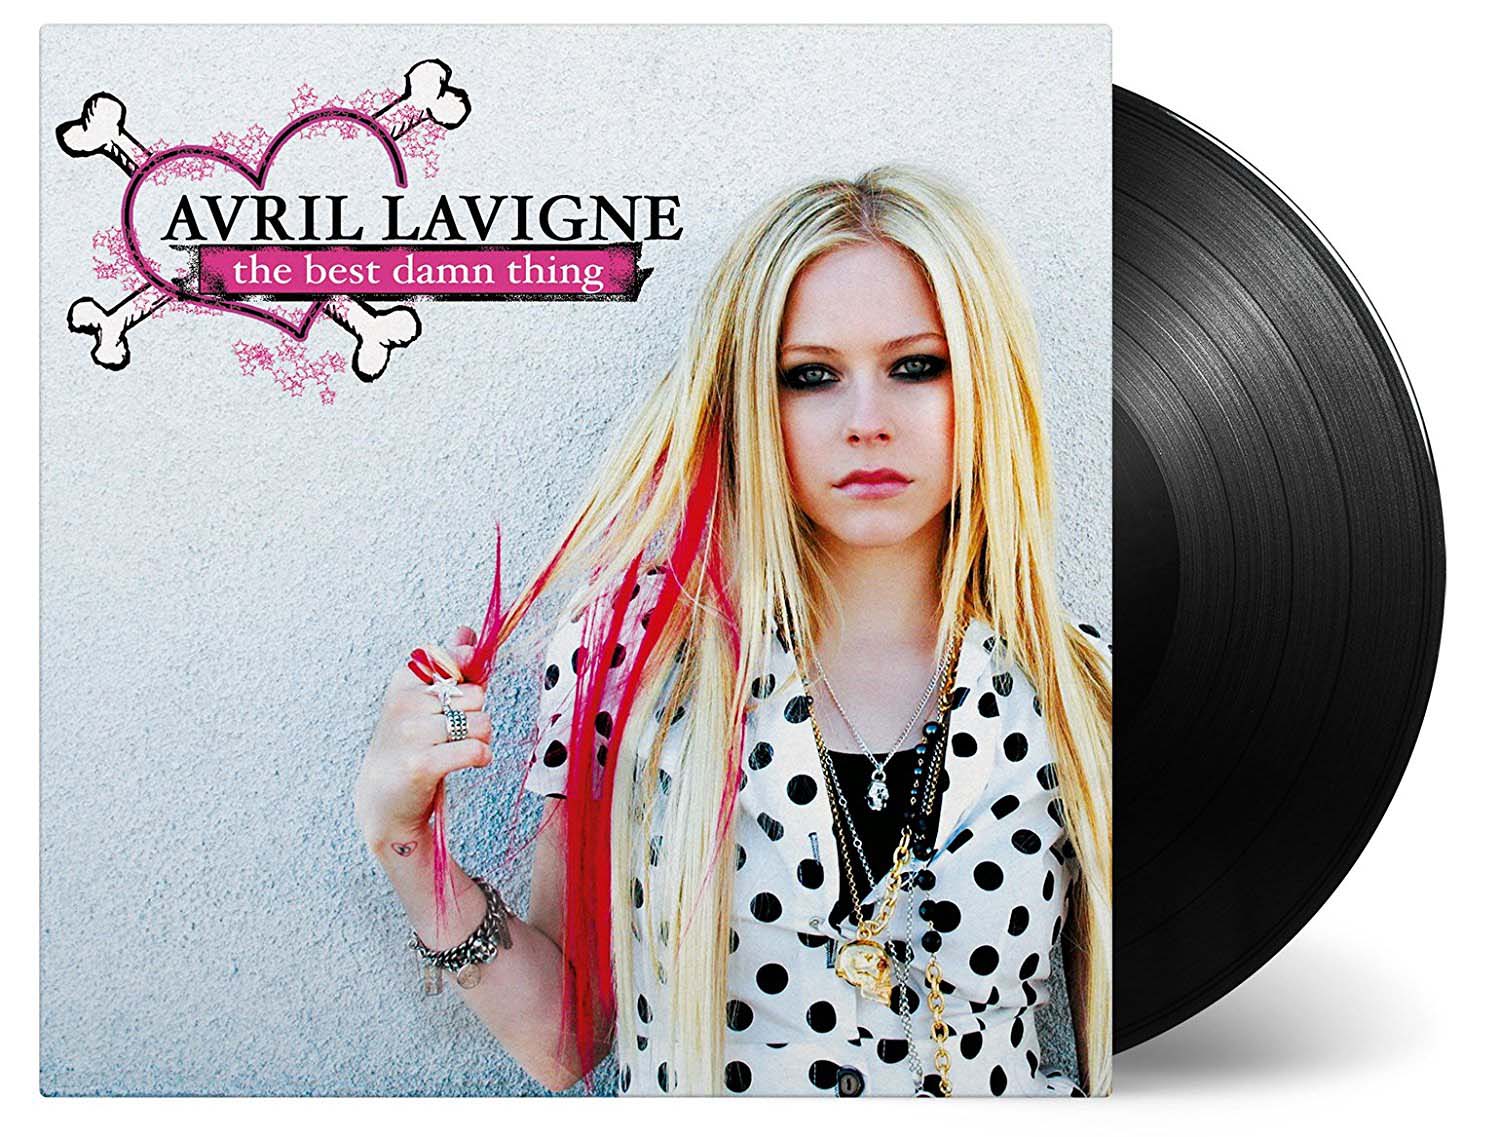 Vinile Avril Lavigne - The Best Damn Thing NUOVO SIGILLATO, EDIZIONE DEL 14/09/2017 SUBITO DISPONIBILE